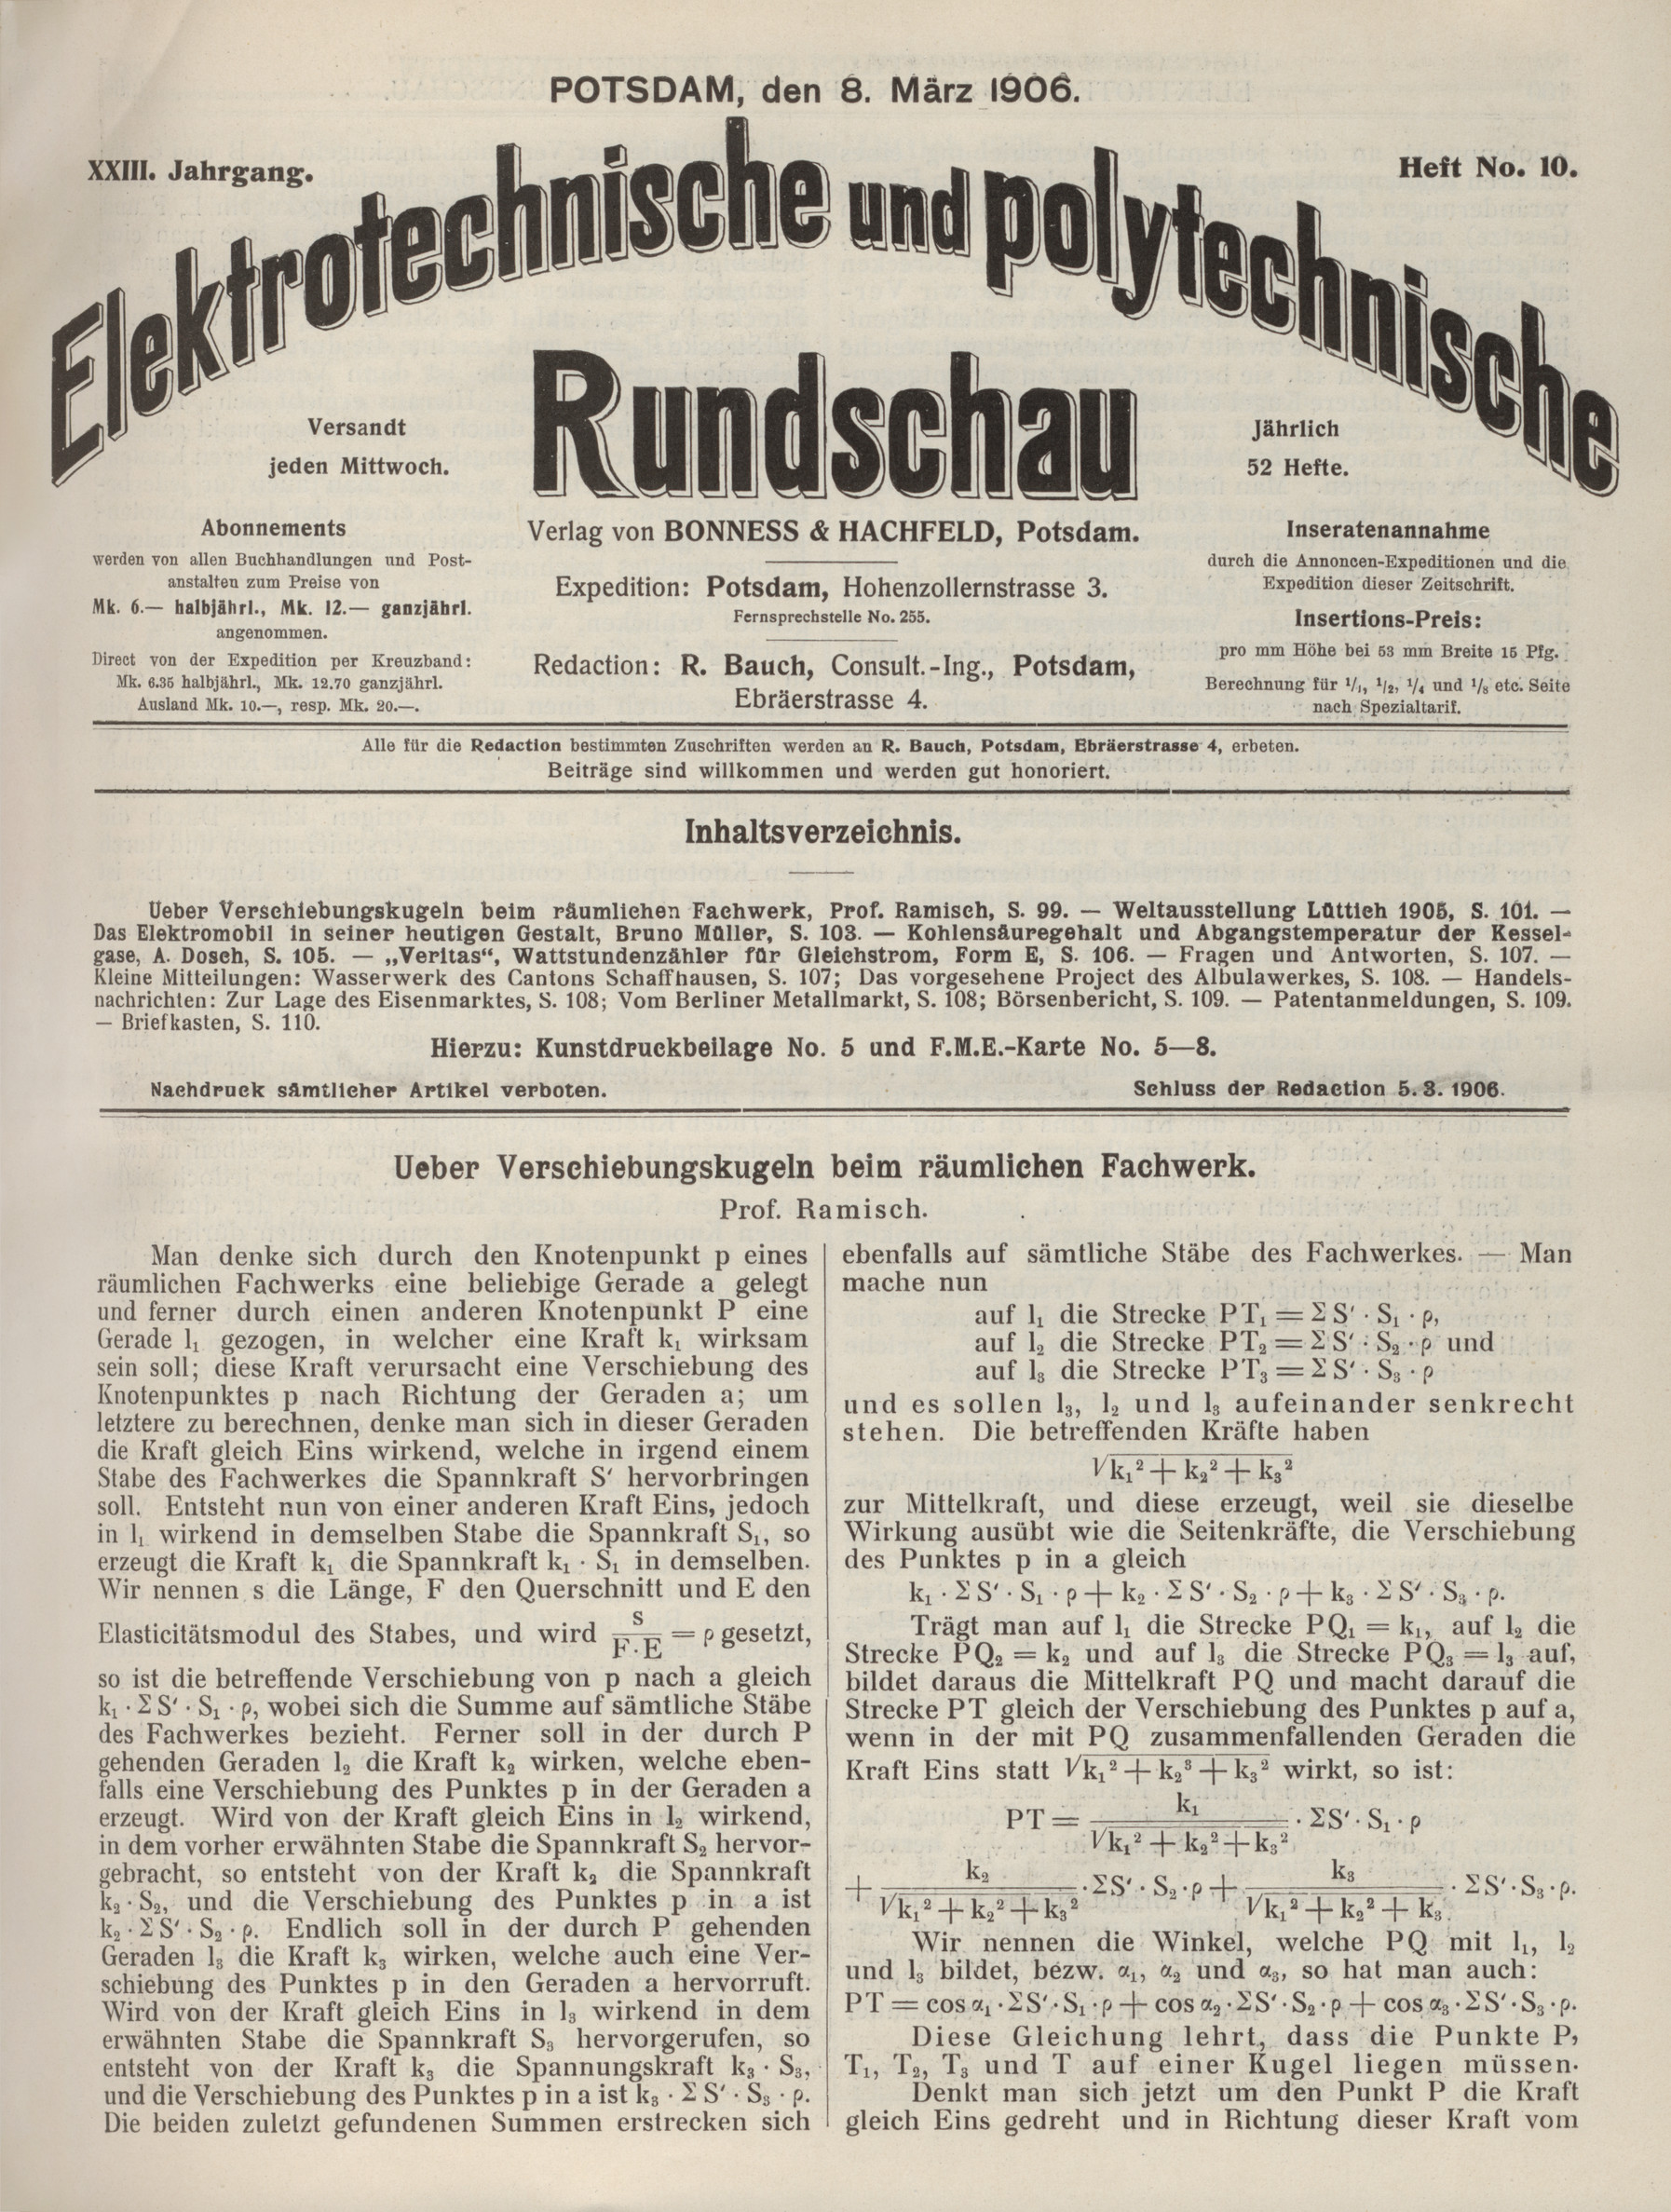 Elektrotechnische und polytechnische Rundschau, XXIII. Jahrgang, Heft No. 10